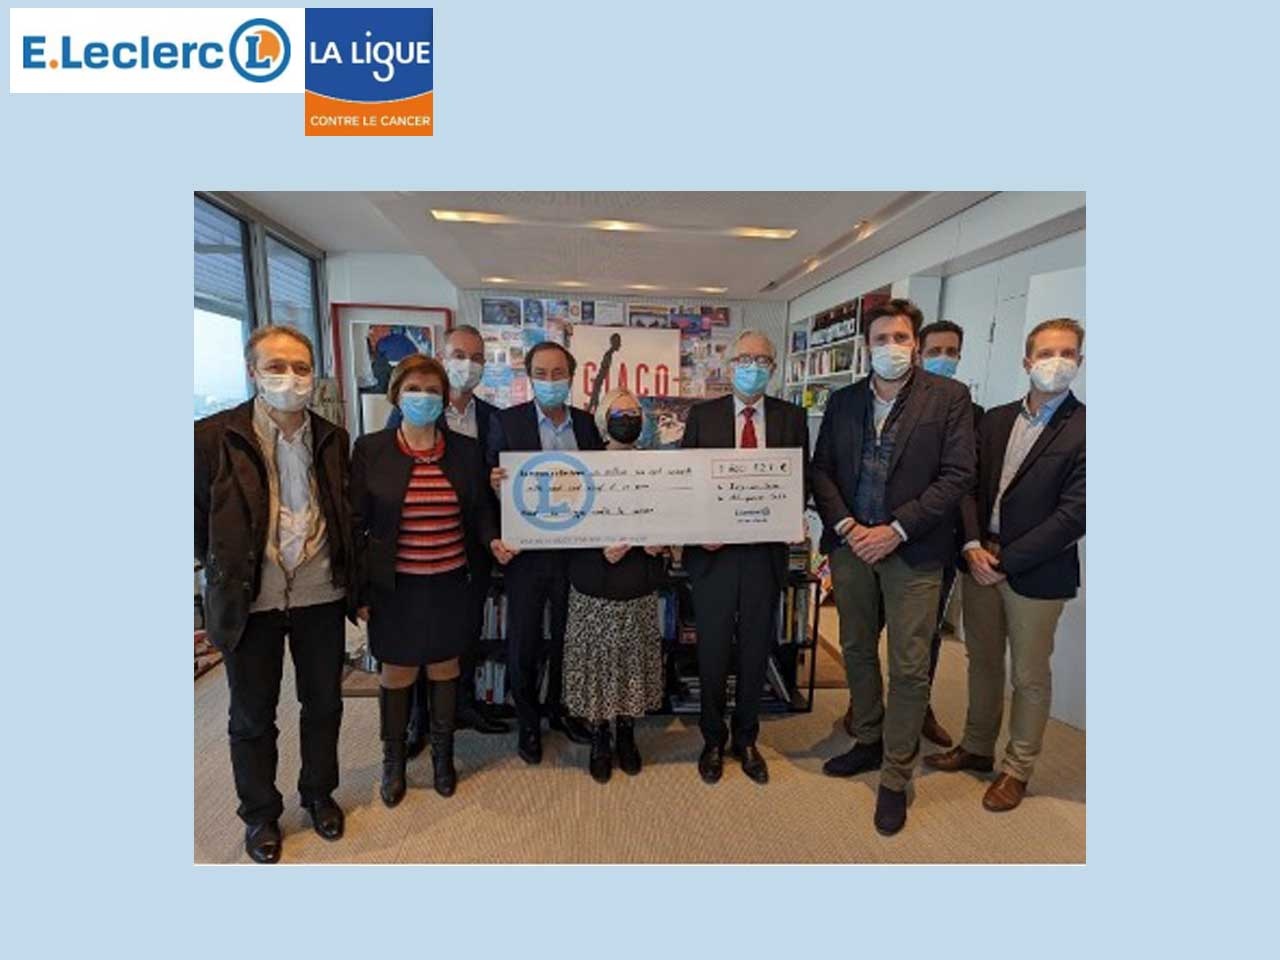 Bilan record pour l’opération « Tous unis contre le cancer » : 1 660 721€ récoltés dans les magasins E.Leclerc pour la Ligue nationale contre le cancer